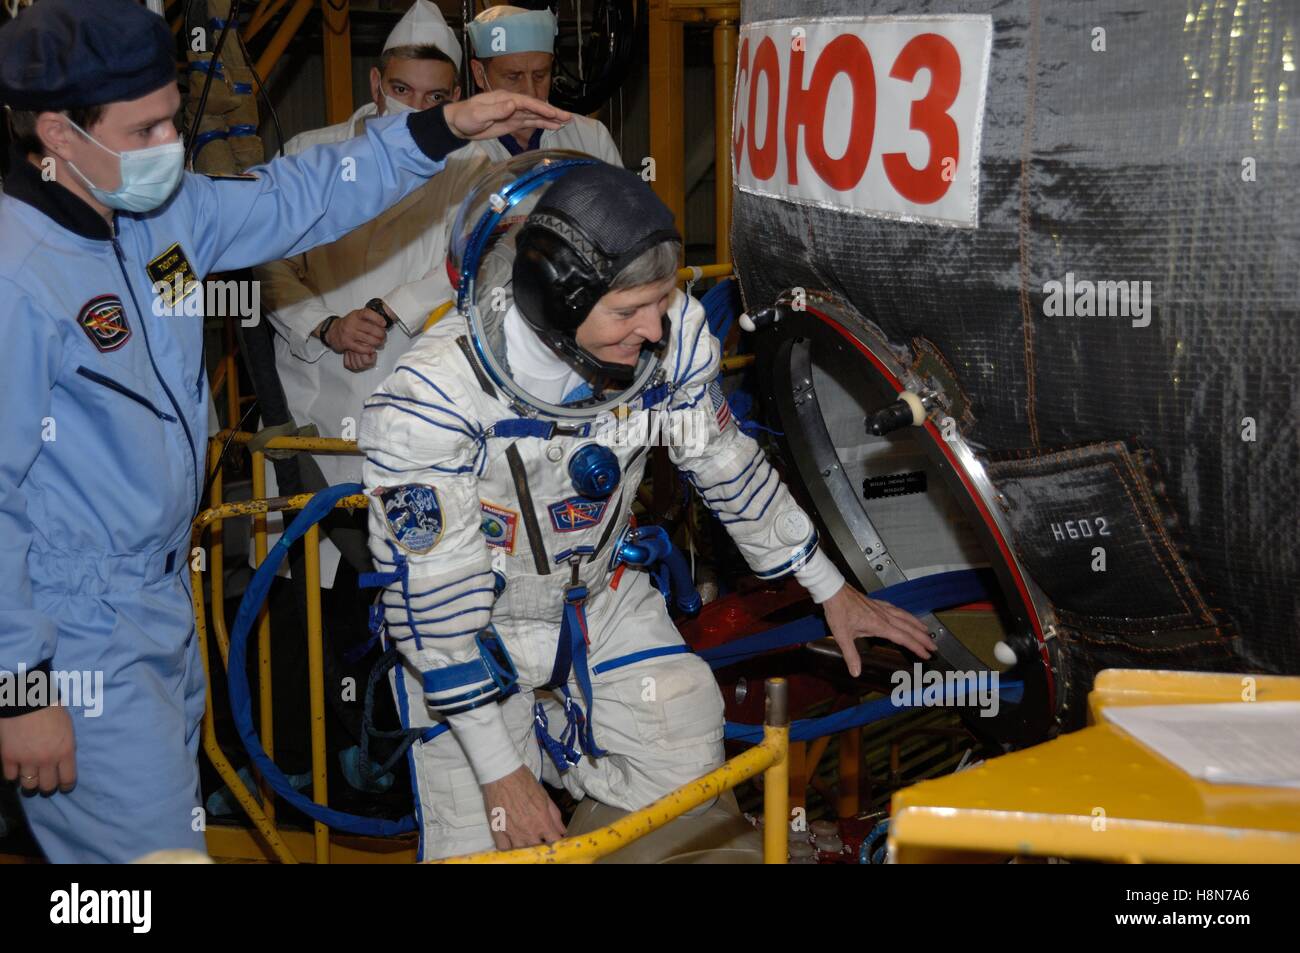 NASA internationale Raumstation Expedition 50-51 erstklassige Crew Mitglied Astronaut Peggy Whitson besteigt das Raumschiff Sojus MS-03 während einer Fit Check-Generalprobe in Baikonur Kosmodrom Integration Anlage 2. November 2016 in Baikonur, Kasachstan. Stockfoto